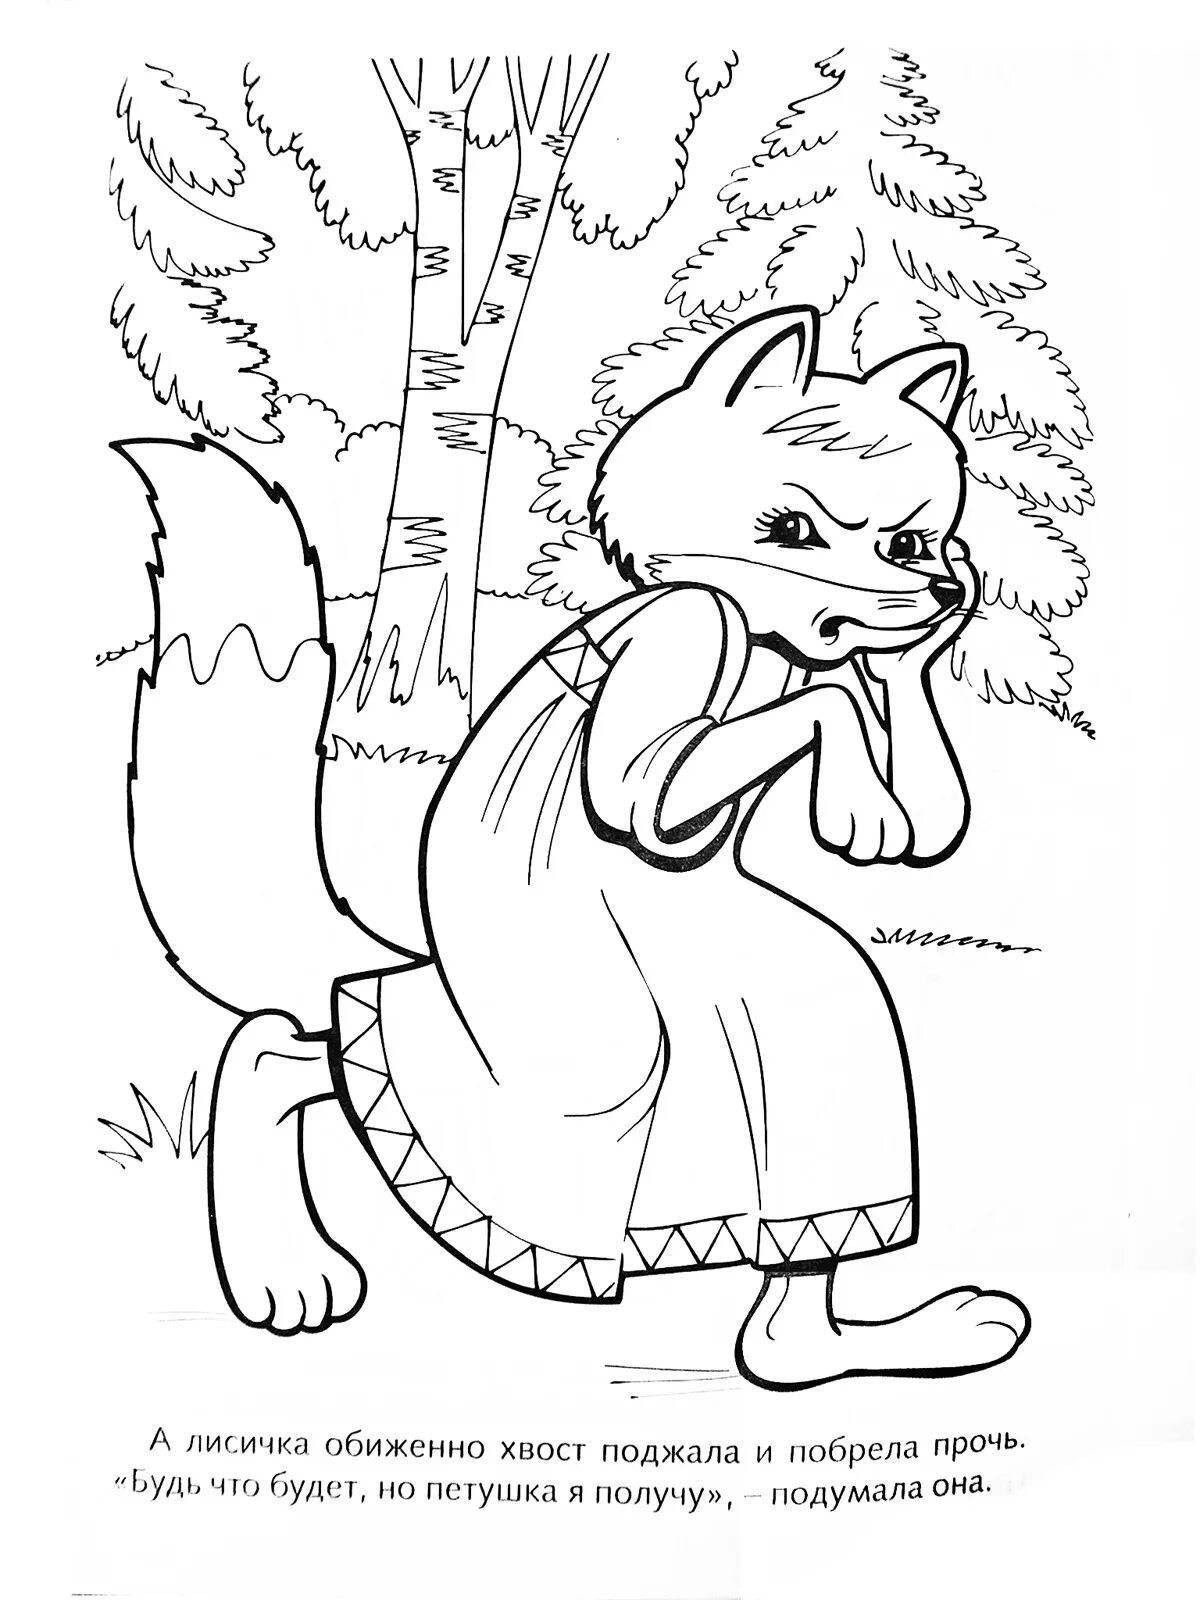 Cute bun fox coloring page